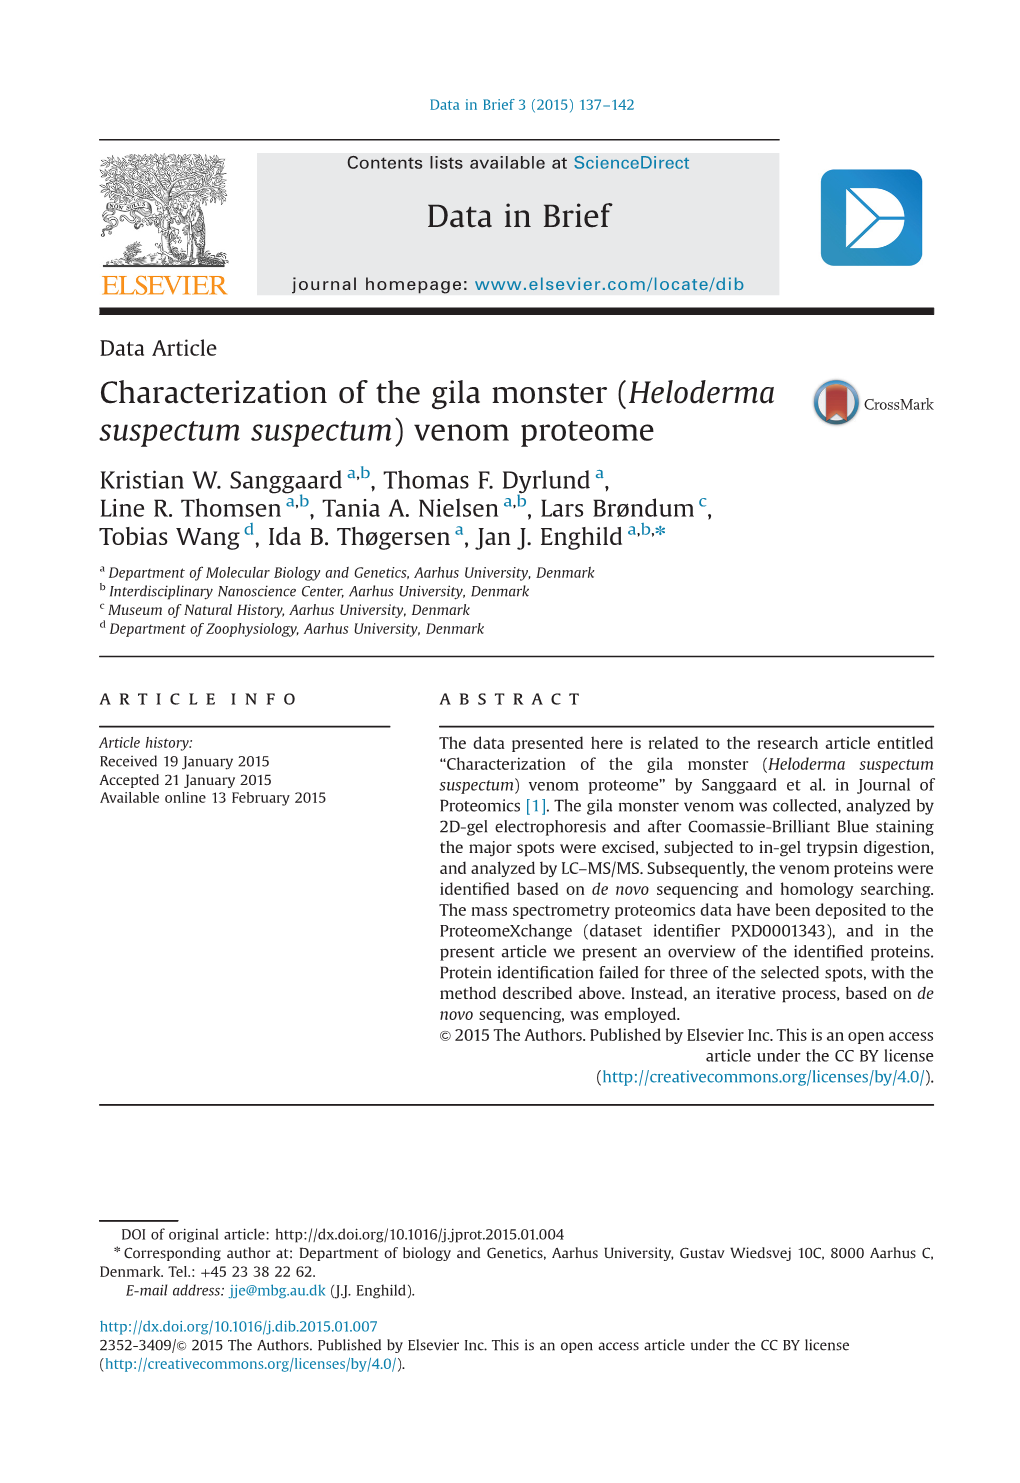 Characterization of the Gila Monster (Heloderma Suspectum Suspectum) Venom Proteome